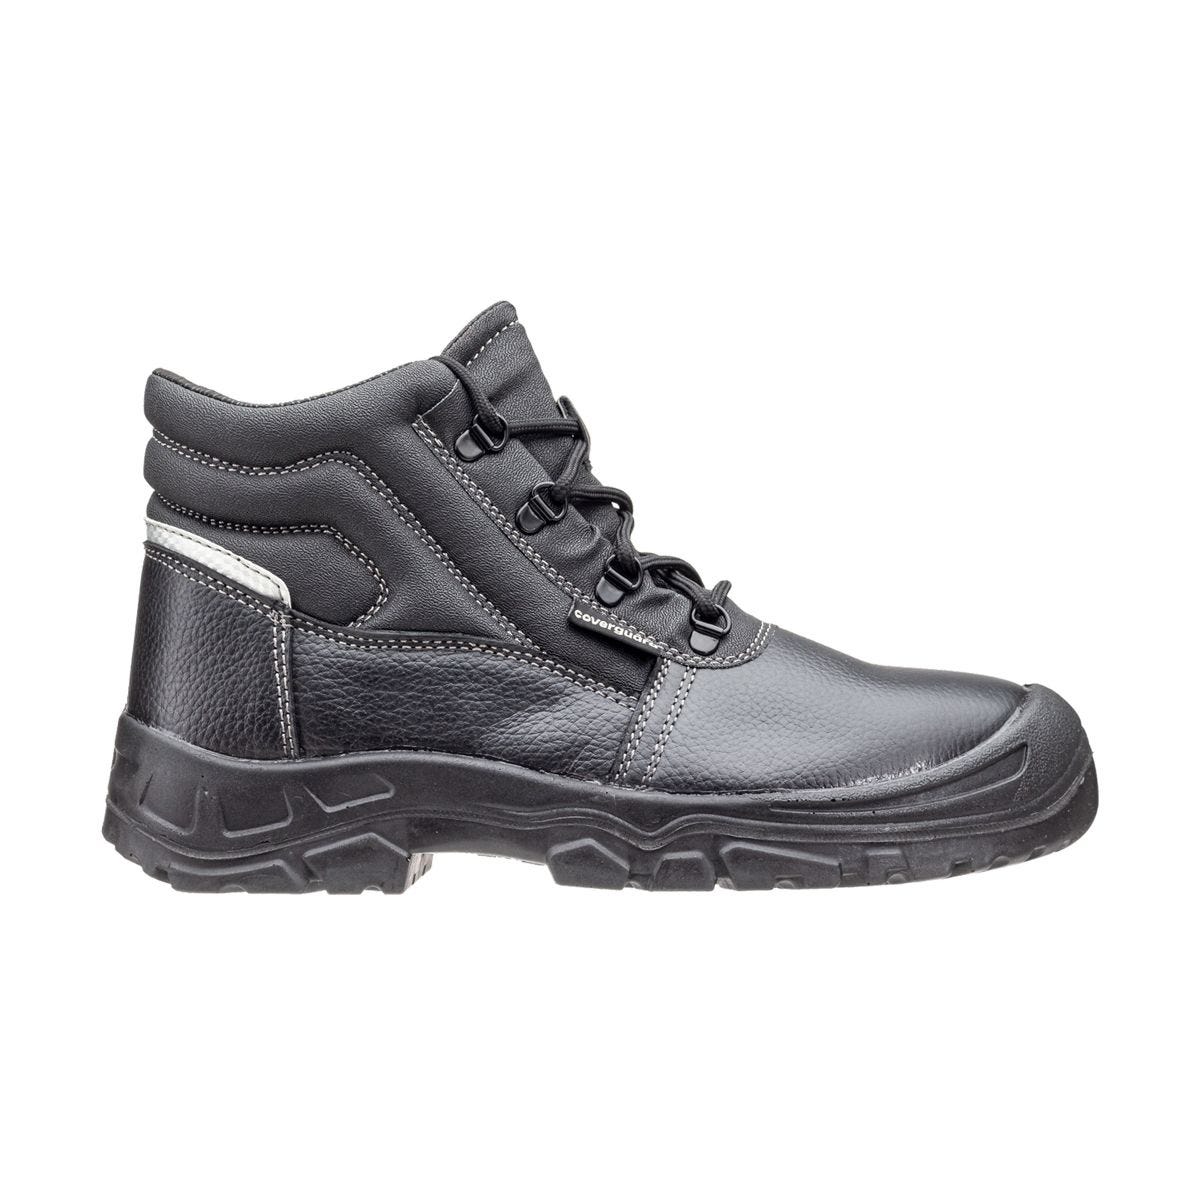 Chaussures de sécurité hautes Azurite II S3 ESD noir - Coverguard - Taille 37 1